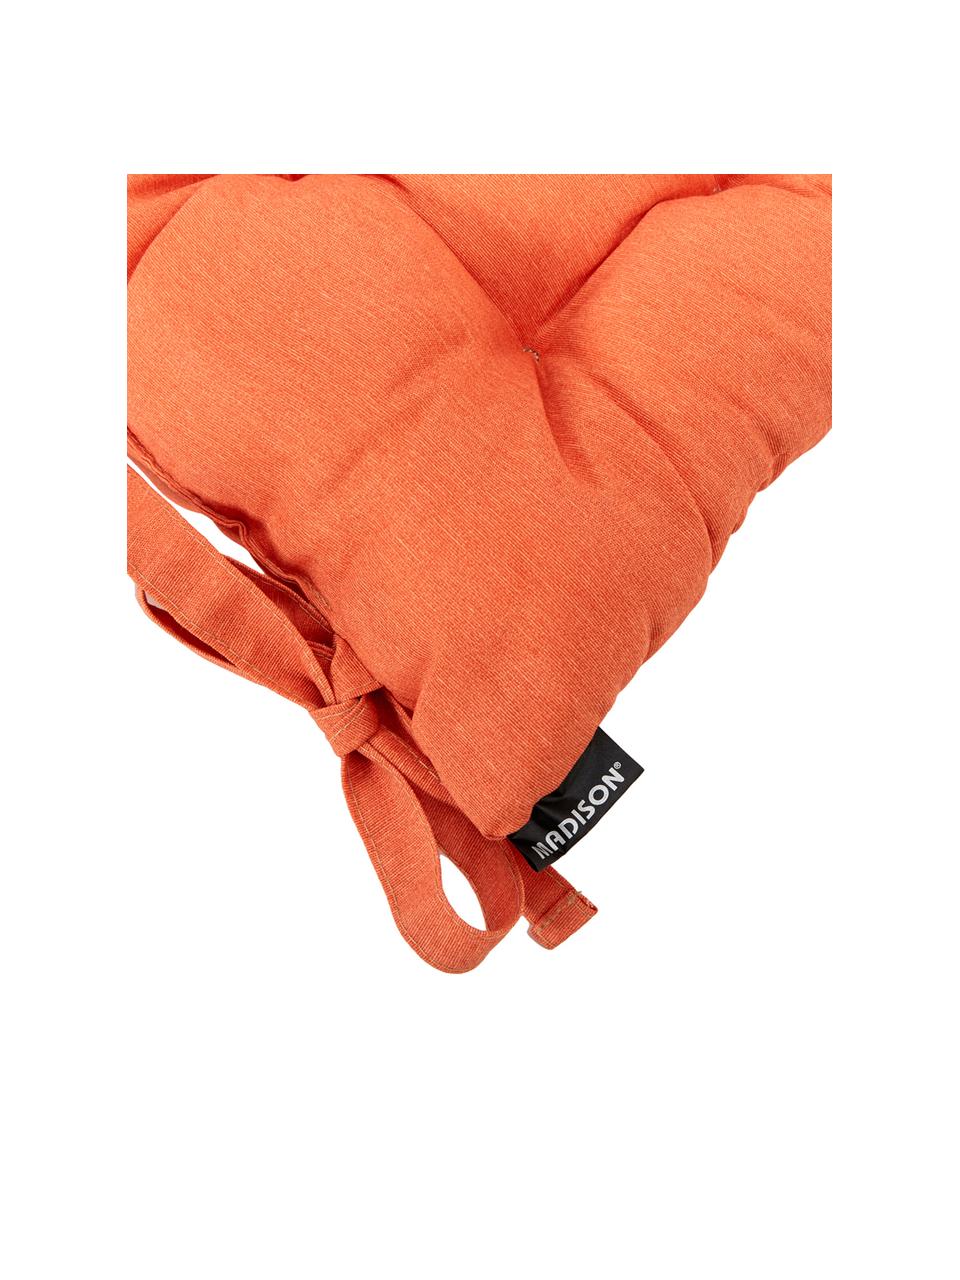 Poduszka na siedzisko Panama, Tapicerka: 50% bawełna, 45% polieste, Pomarańczowy, S 45 x D 45 cm